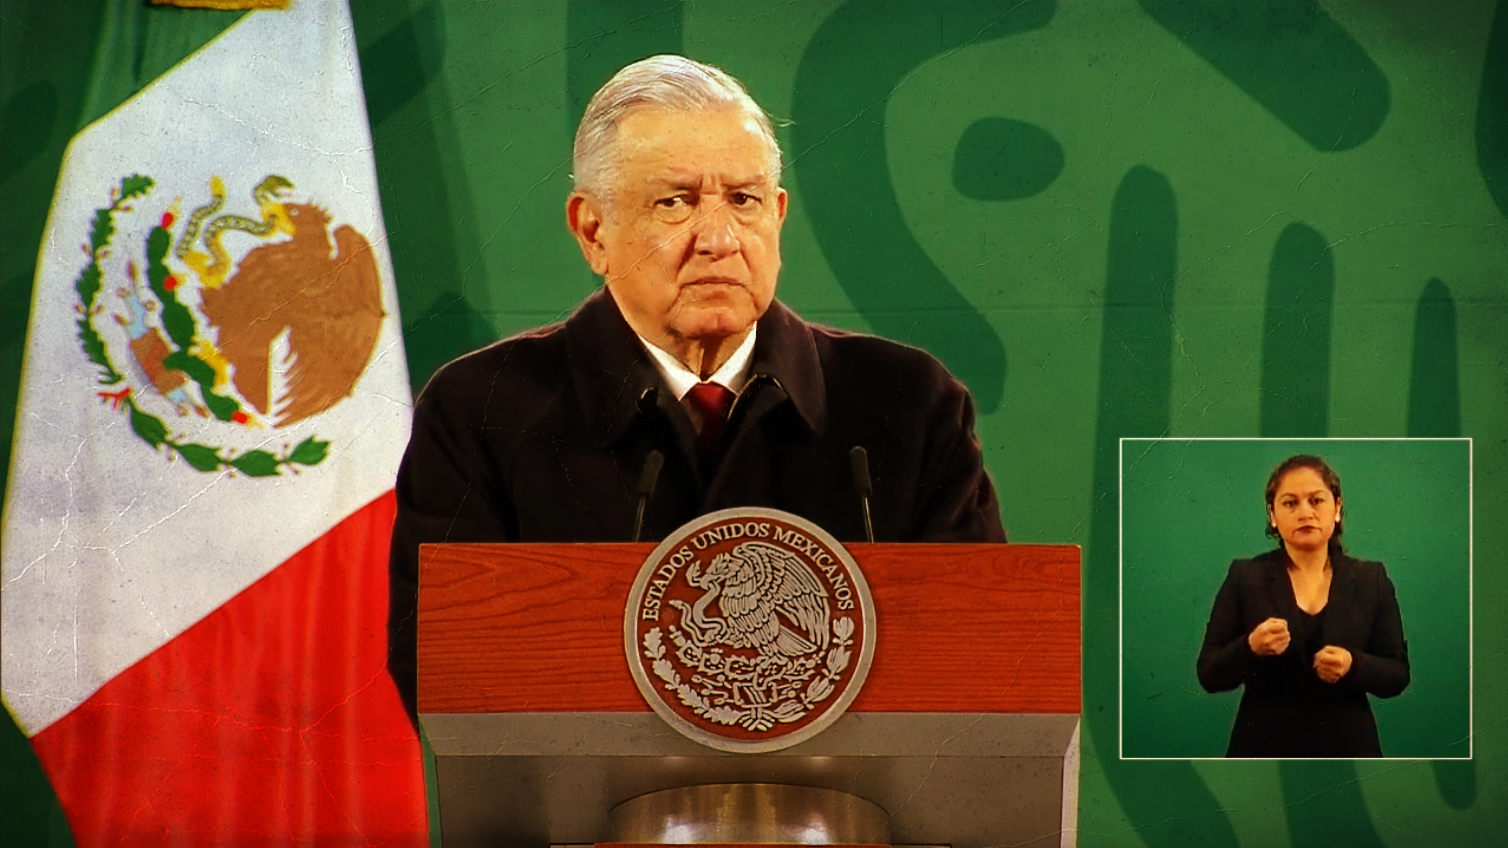 El presidente señala que en México la polarización de la sociedad NO EXISTE, que es un invento más de los intelectuales y medios fifís.